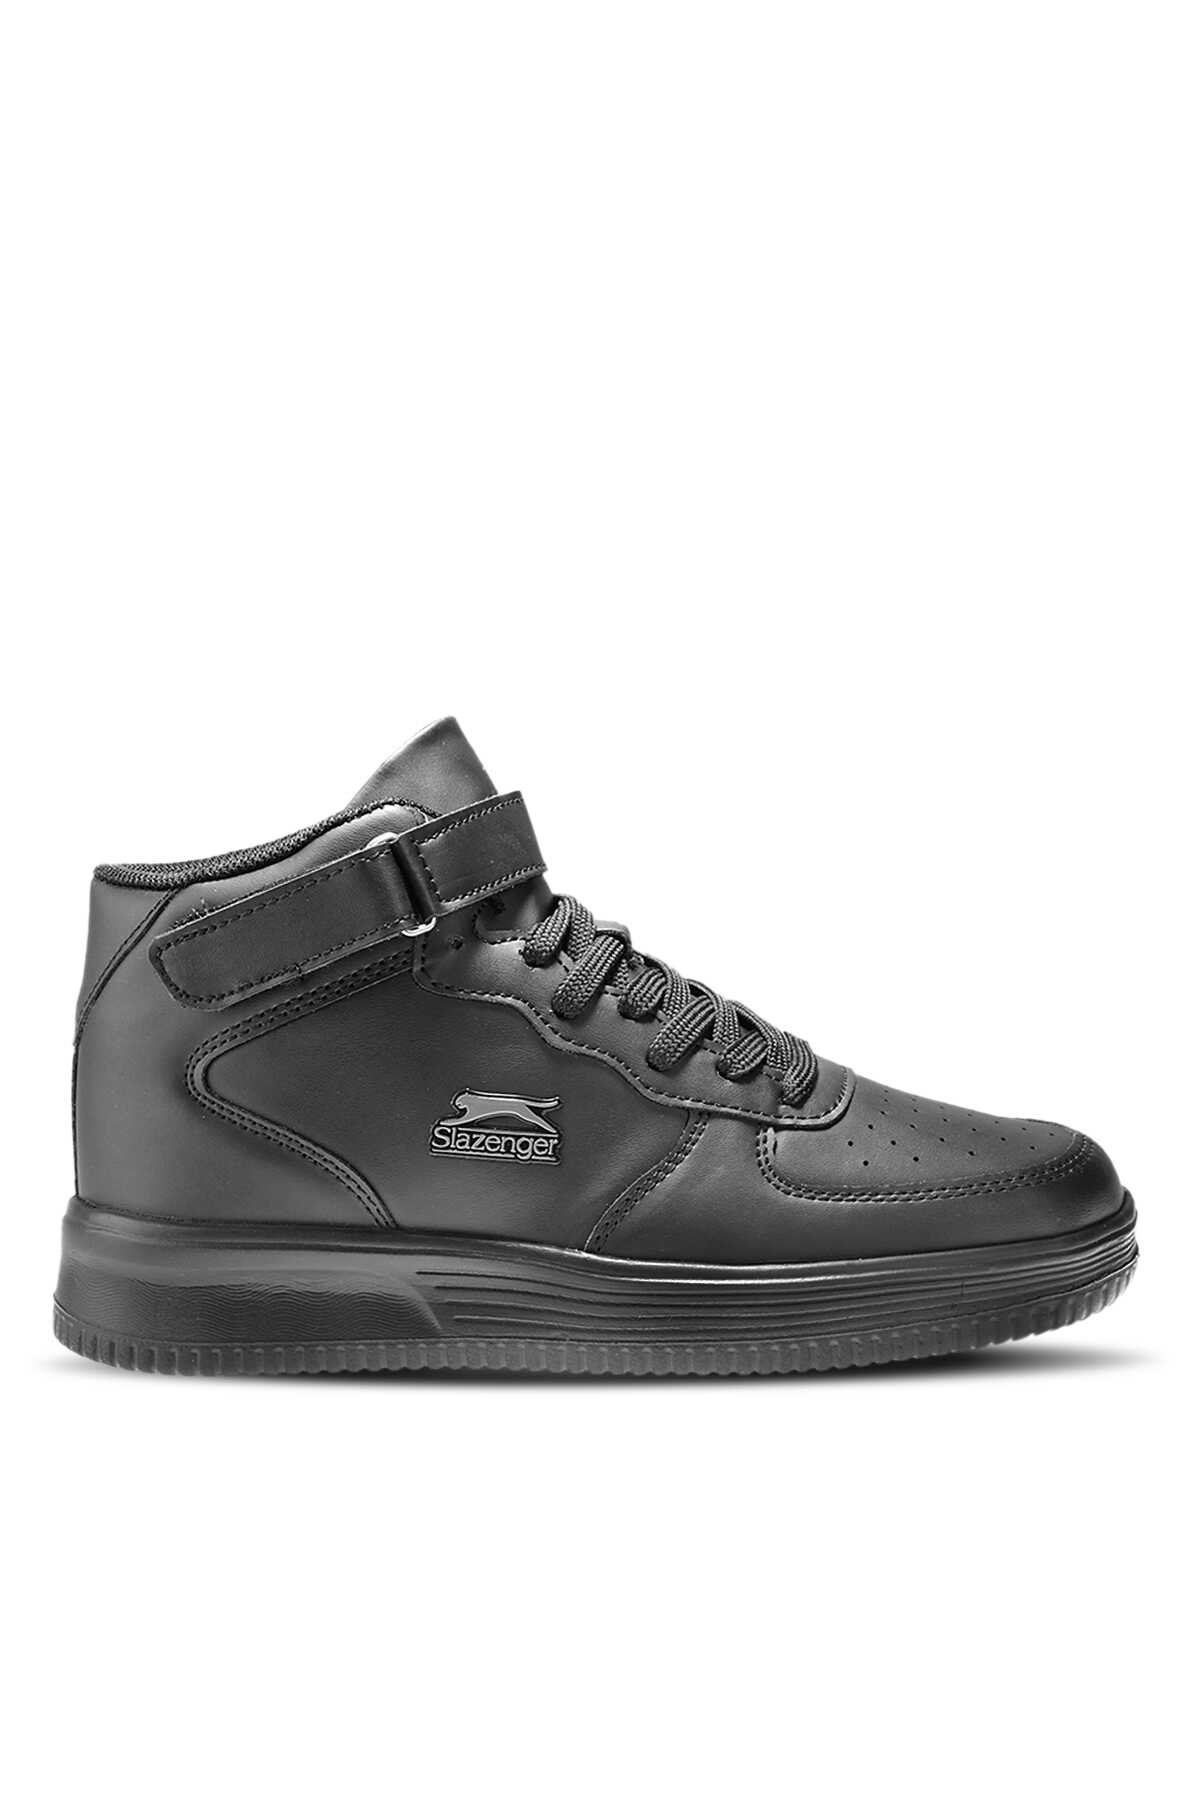 Slazenger - Slazenger PACO Sneaker Kadın Ayakkabı Siyah / Siyah